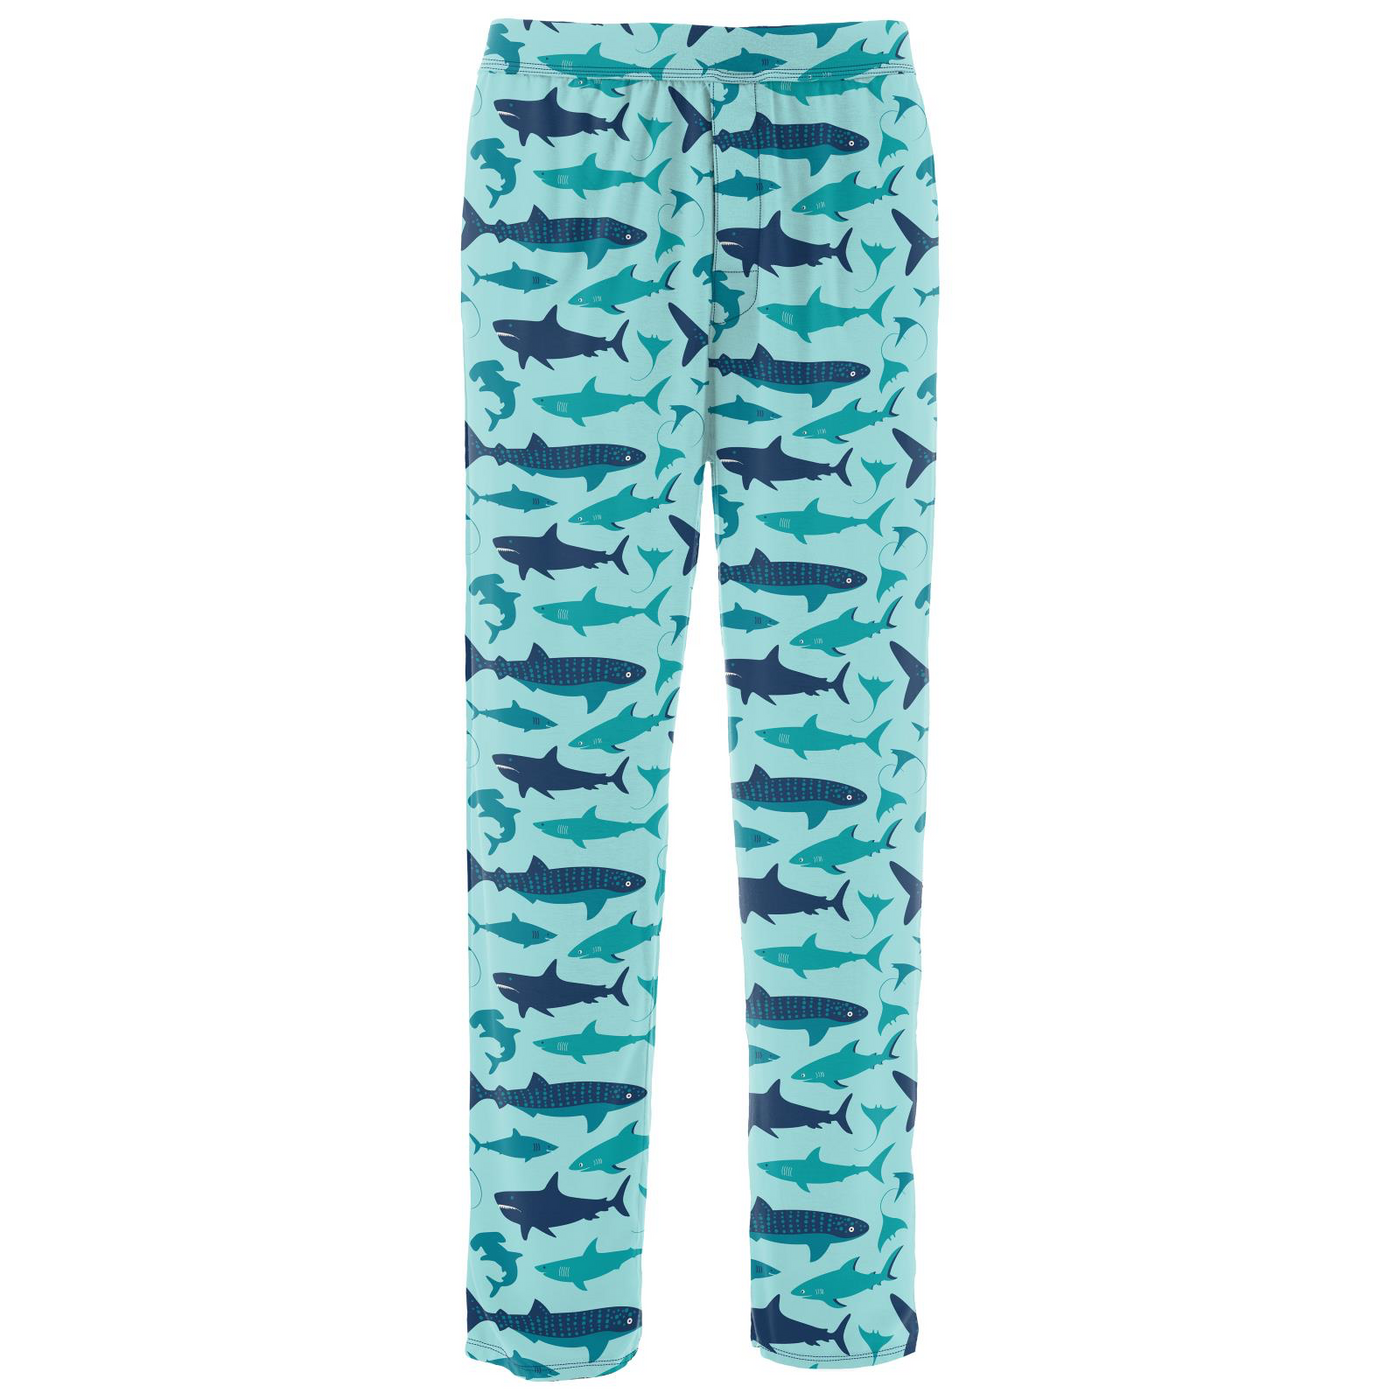 Kickee Pants Men's Pajama Pants: Summer Sky Shark Week